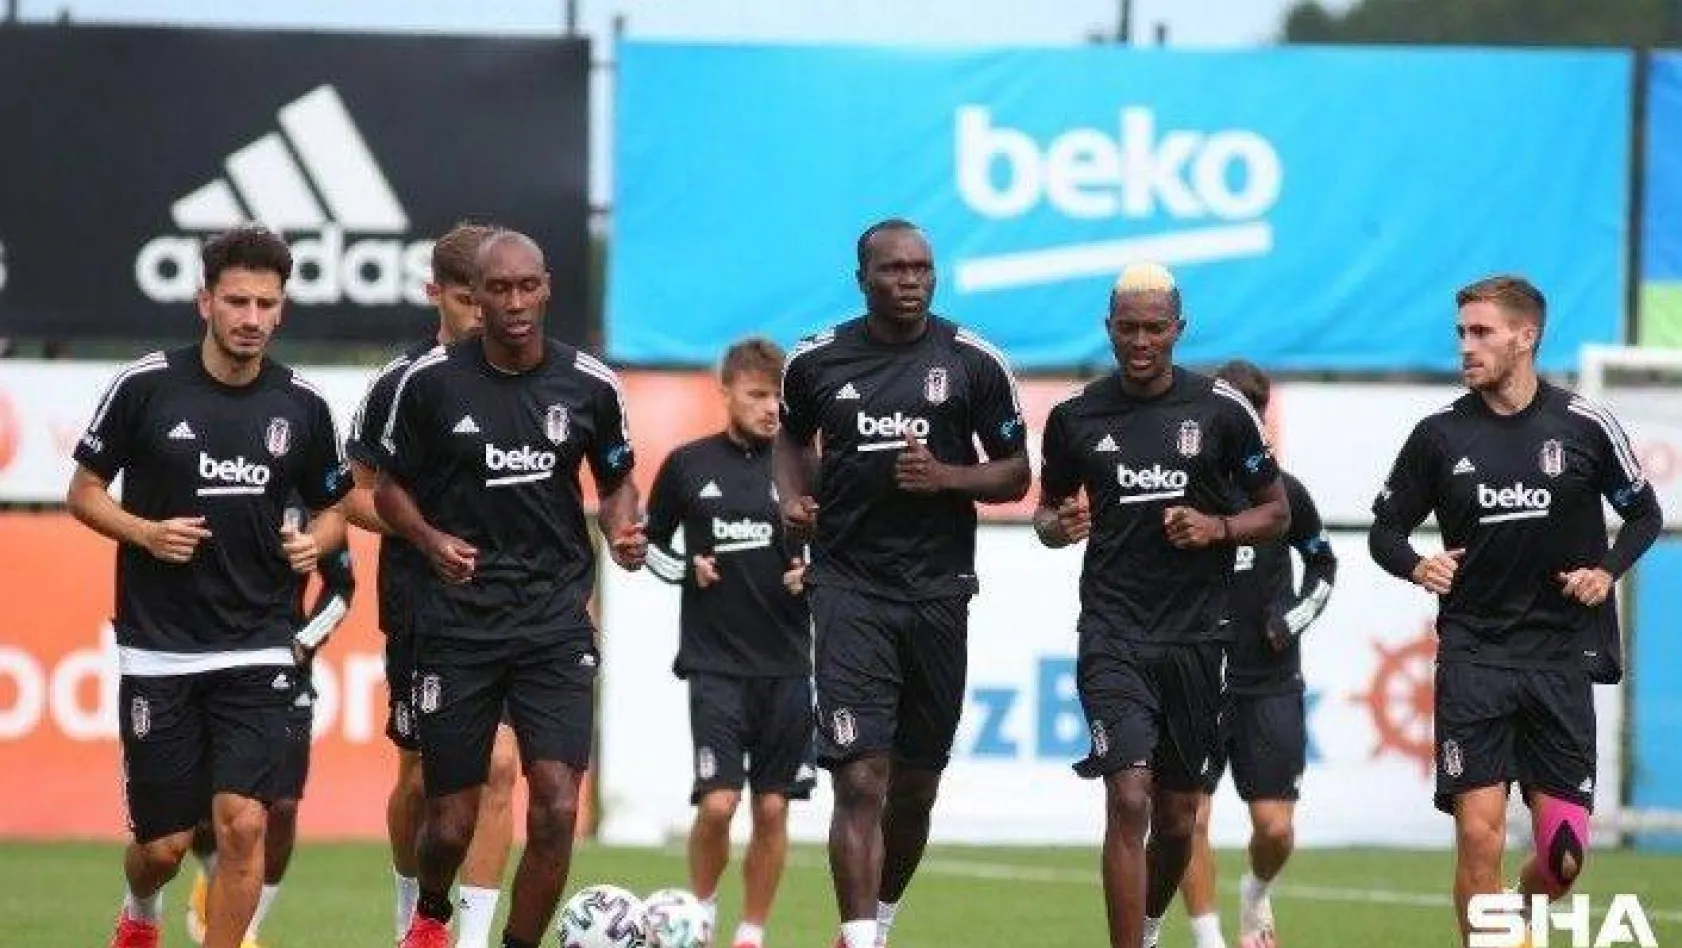 Beşiktaş, Gençlerbirliği maçının hazırlıklarını sürdürdü